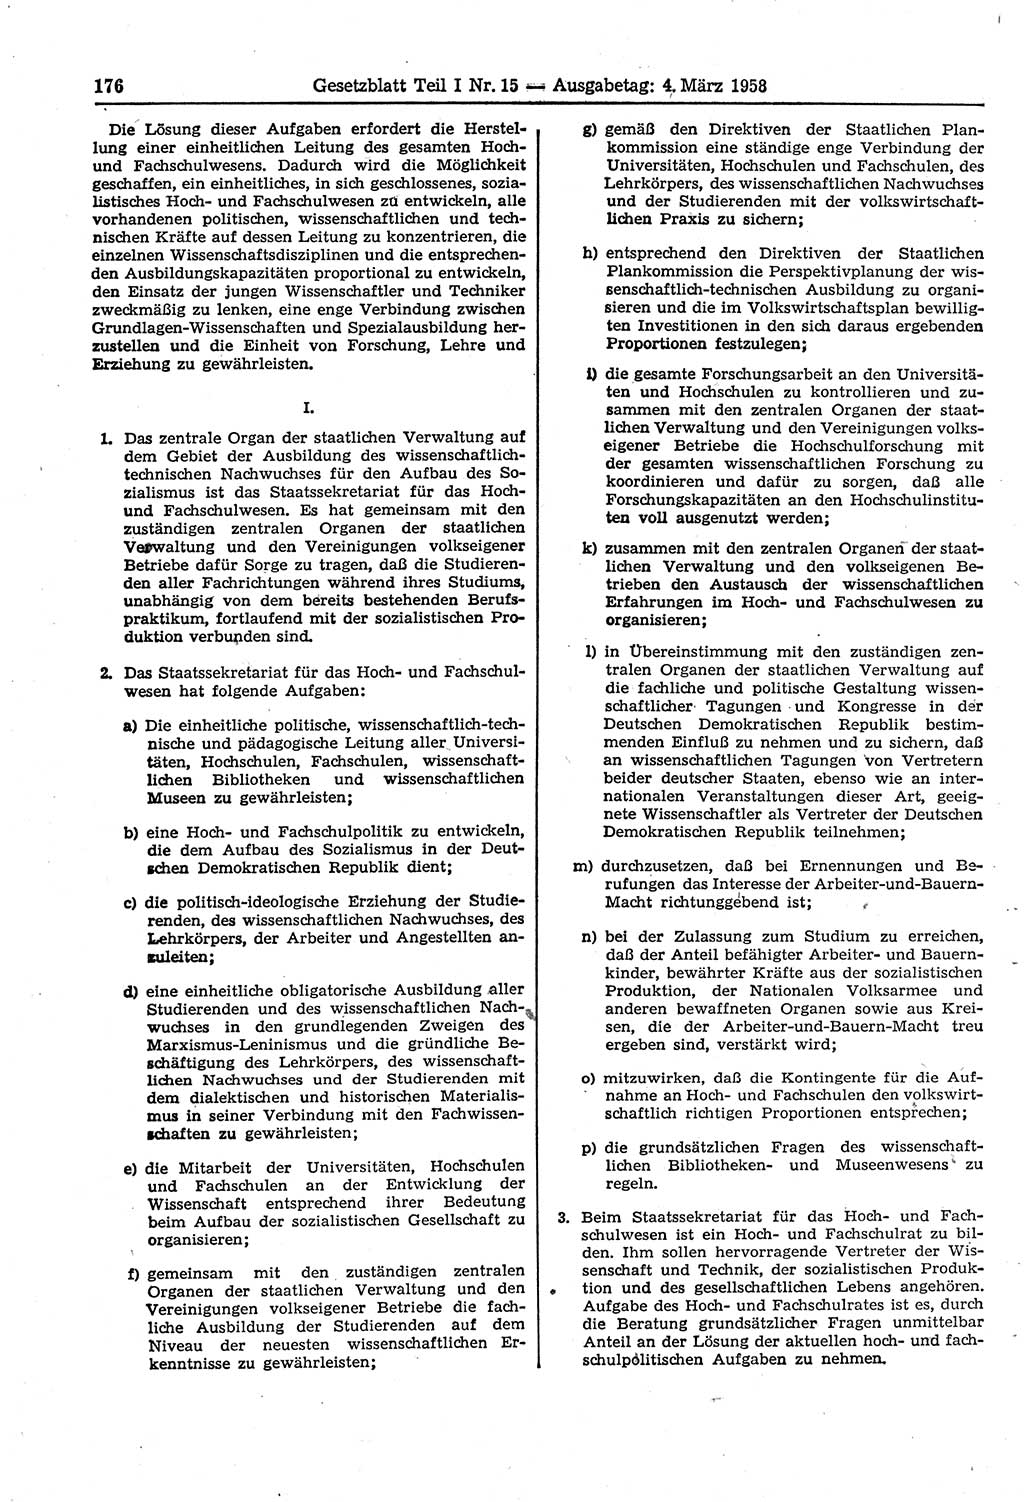 Gesetzblatt (GBl.) der Deutschen Demokratischen Republik (DDR) Teil Ⅰ 1958, Seite 176 (GBl. DDR Ⅰ 1958, S. 176)